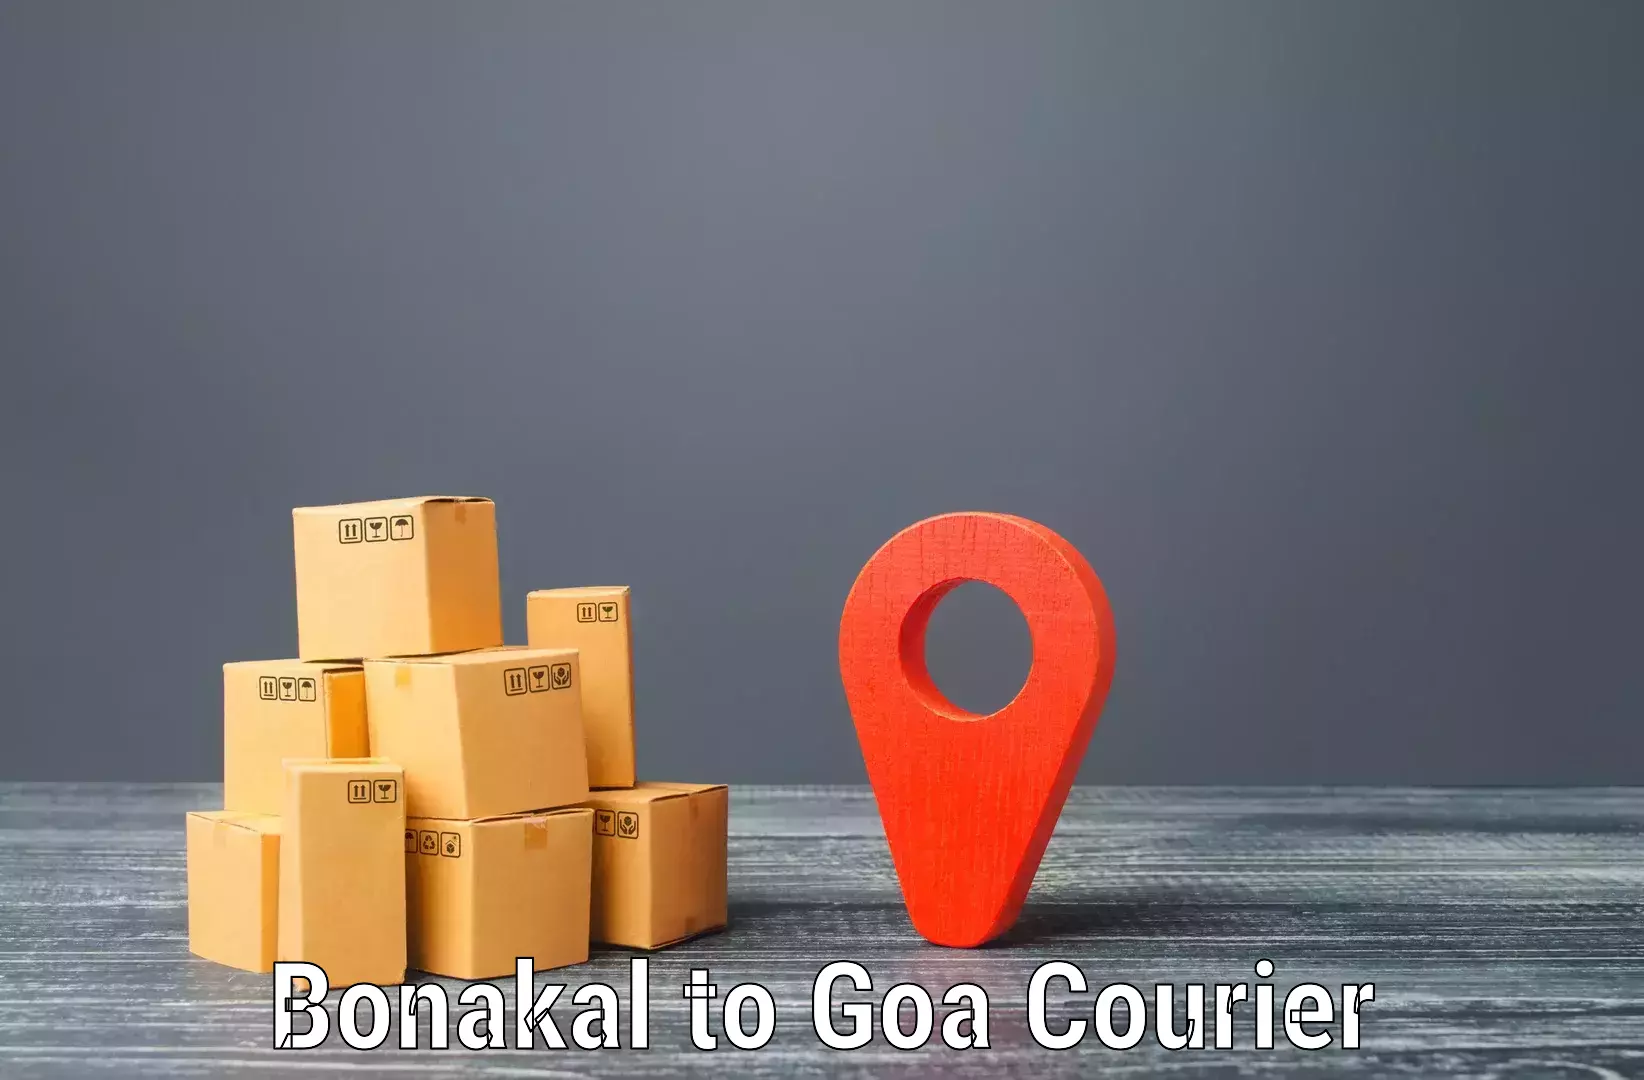 Courier service innovation Bonakal to Sanvordem